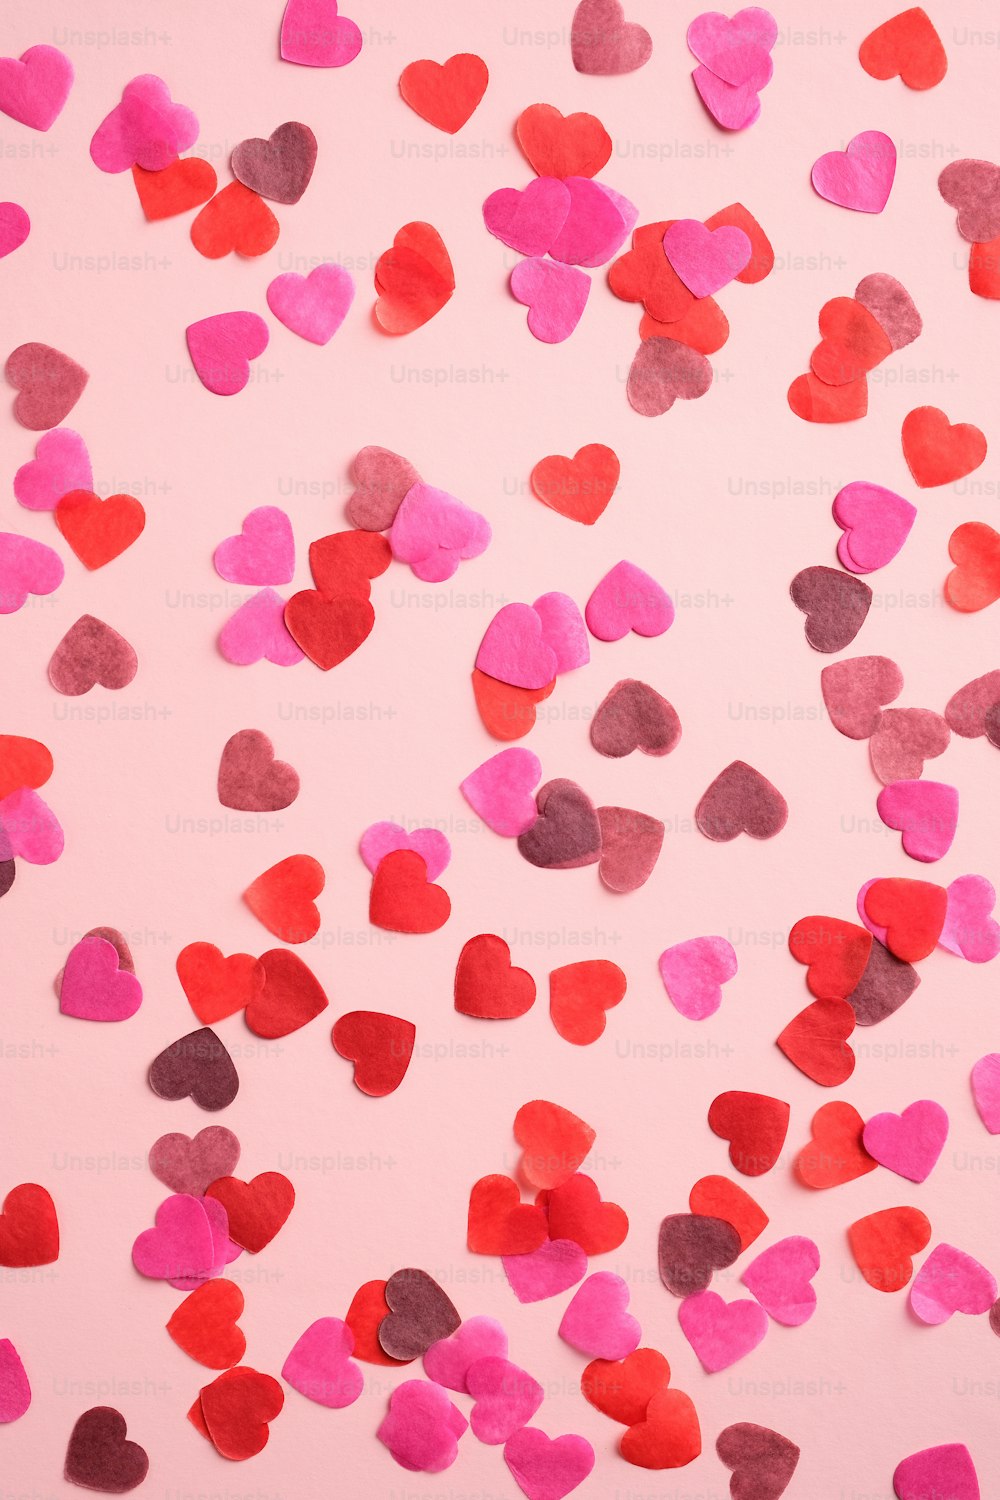 Modello di San Valentino fatto di cuori su sfondo rosa. Adatto per banner verticali, volantini, brochure, storie sui social media